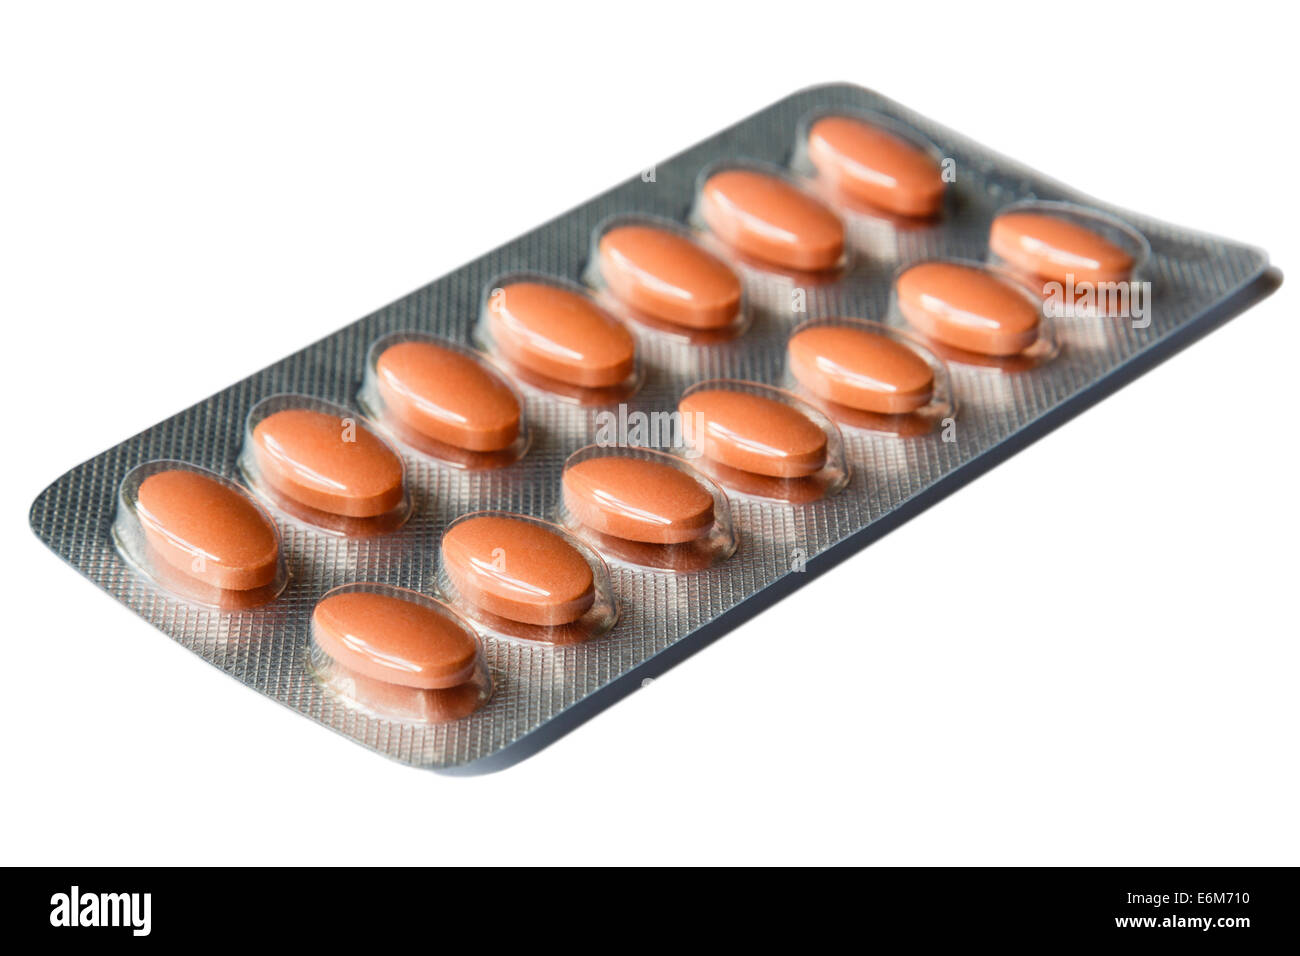 La simvastatina 40 mg di statina compresse per il trattamento del colesterolo alto in una lamina di pillole calendario blister su sfondo bianco Foto Stock